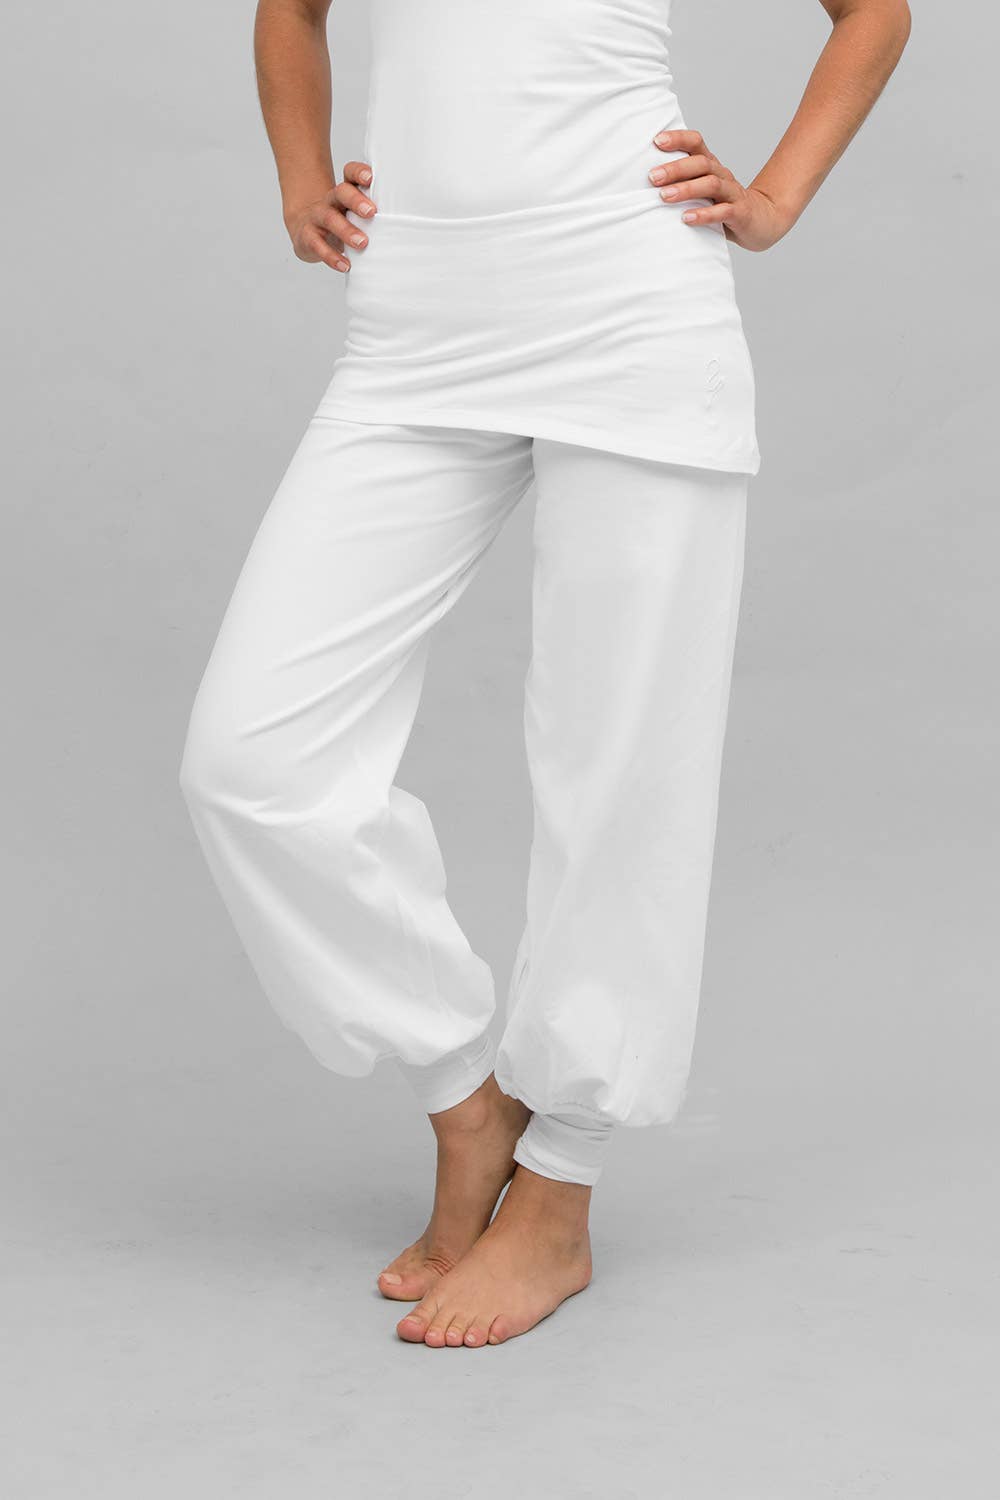  Yoga Clothing - White / Yoga Clothing / Sport Specific